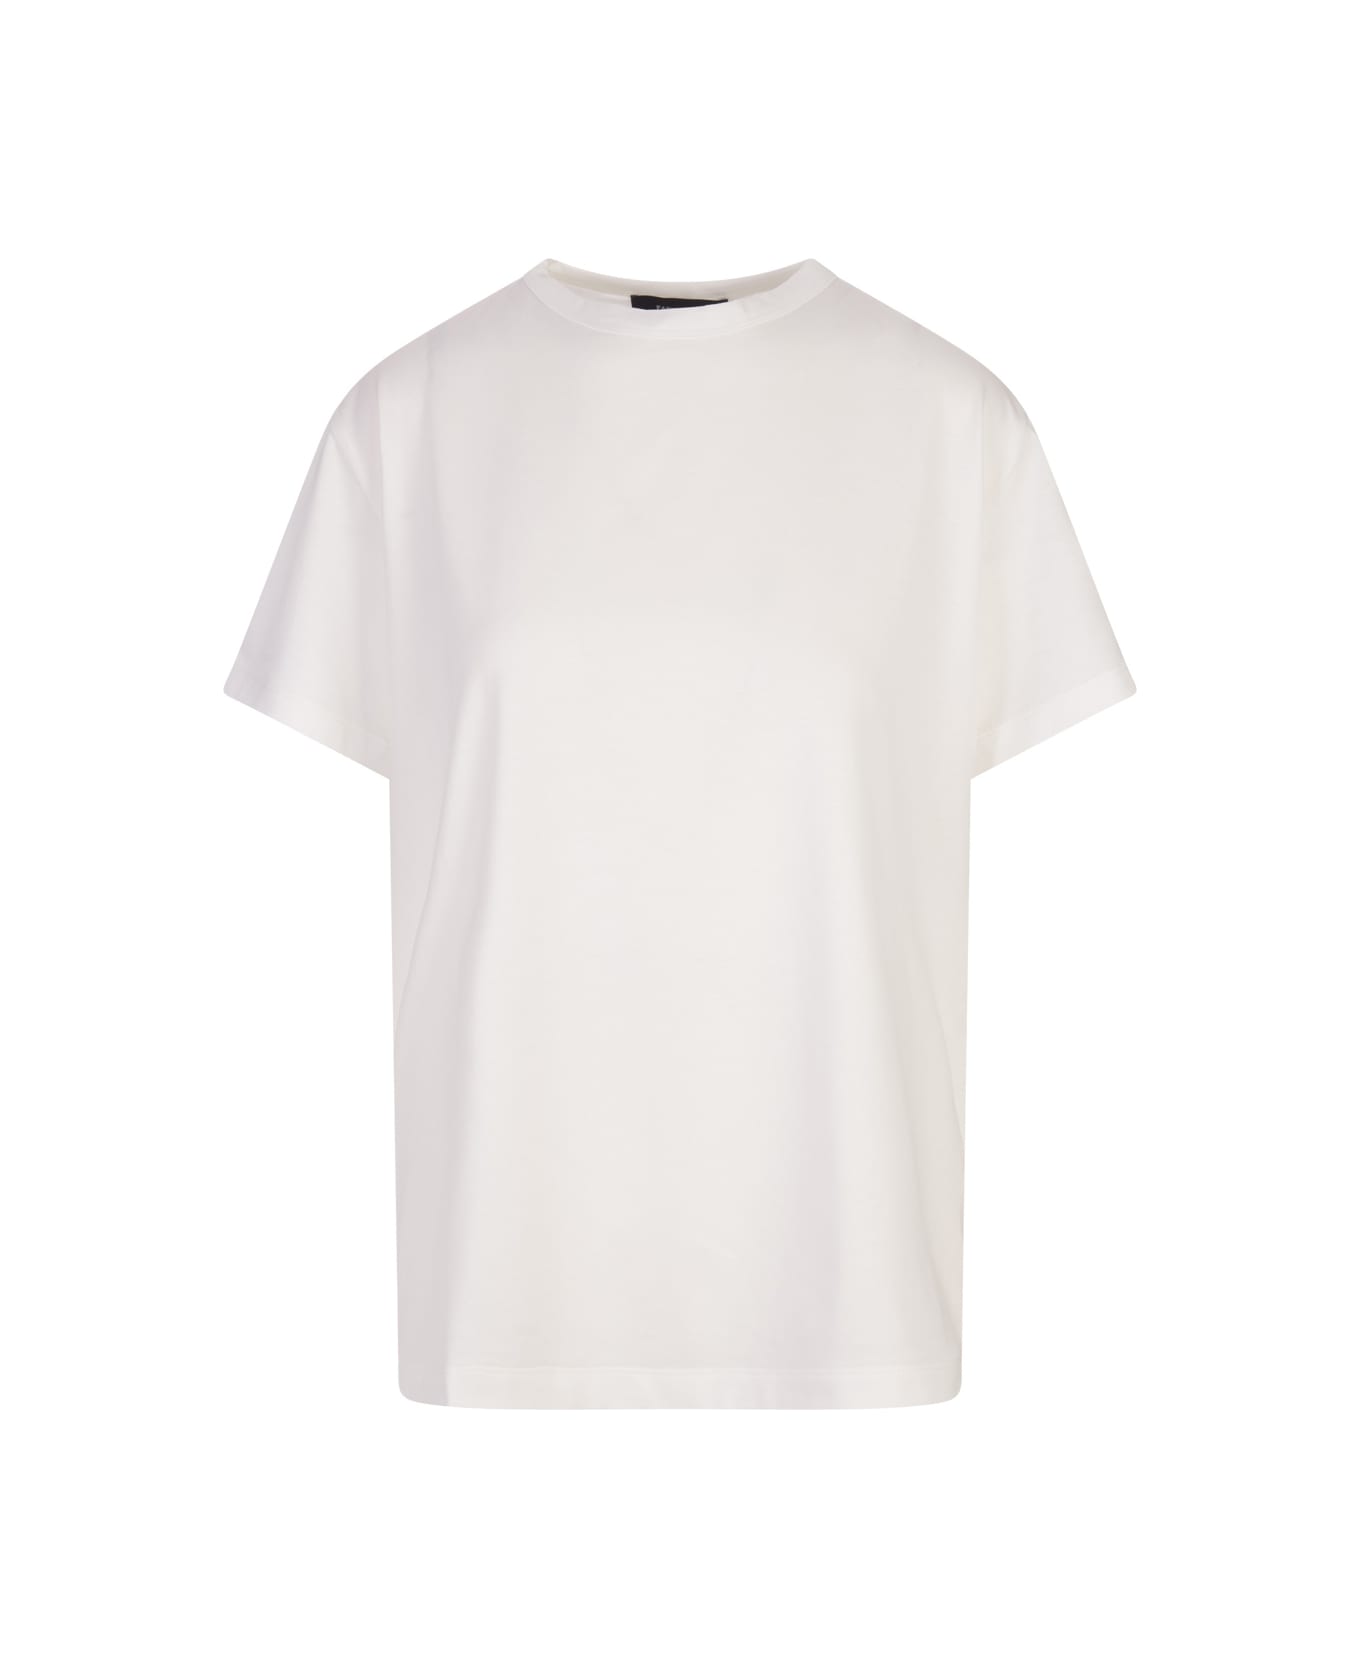 Fabiana Filippi White Cotton And Viscose T-shirt - White